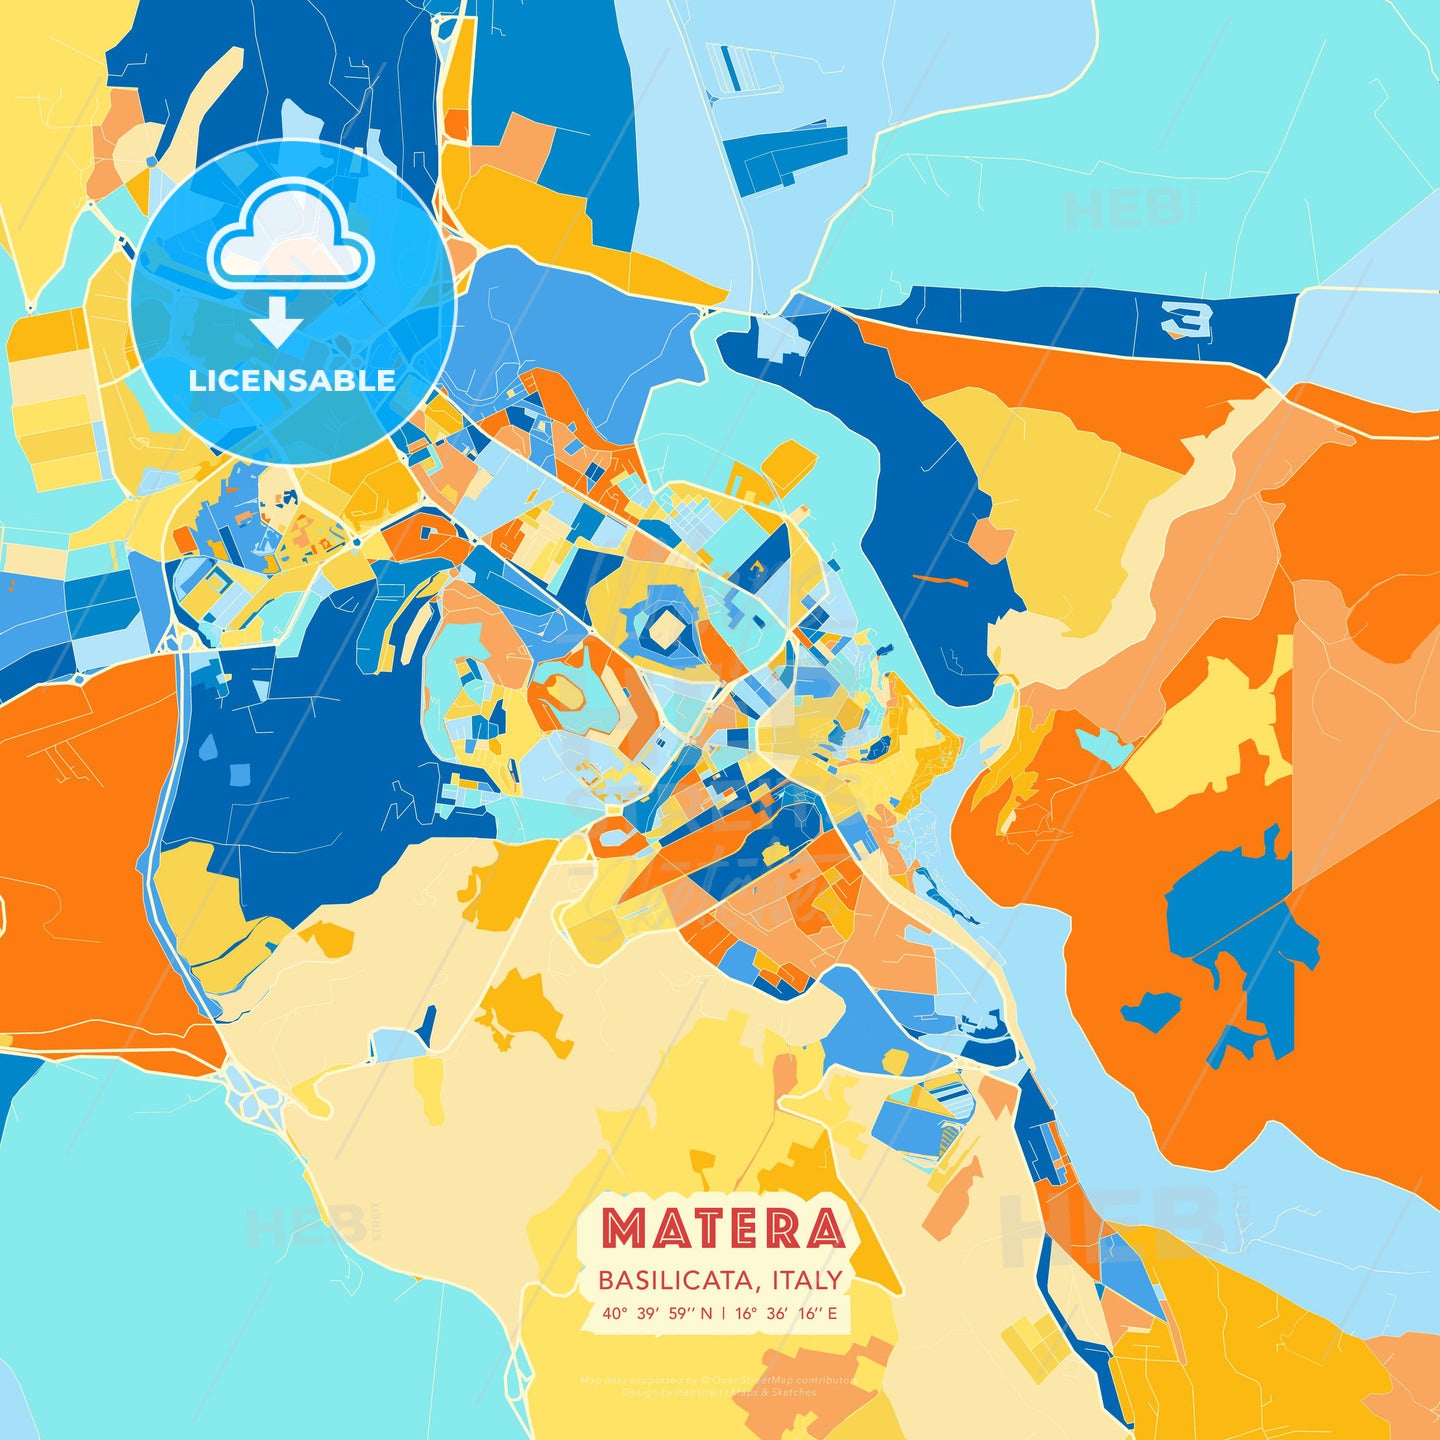 Matera, Basilicata, Italy, map - HEBSTREITS Sketches